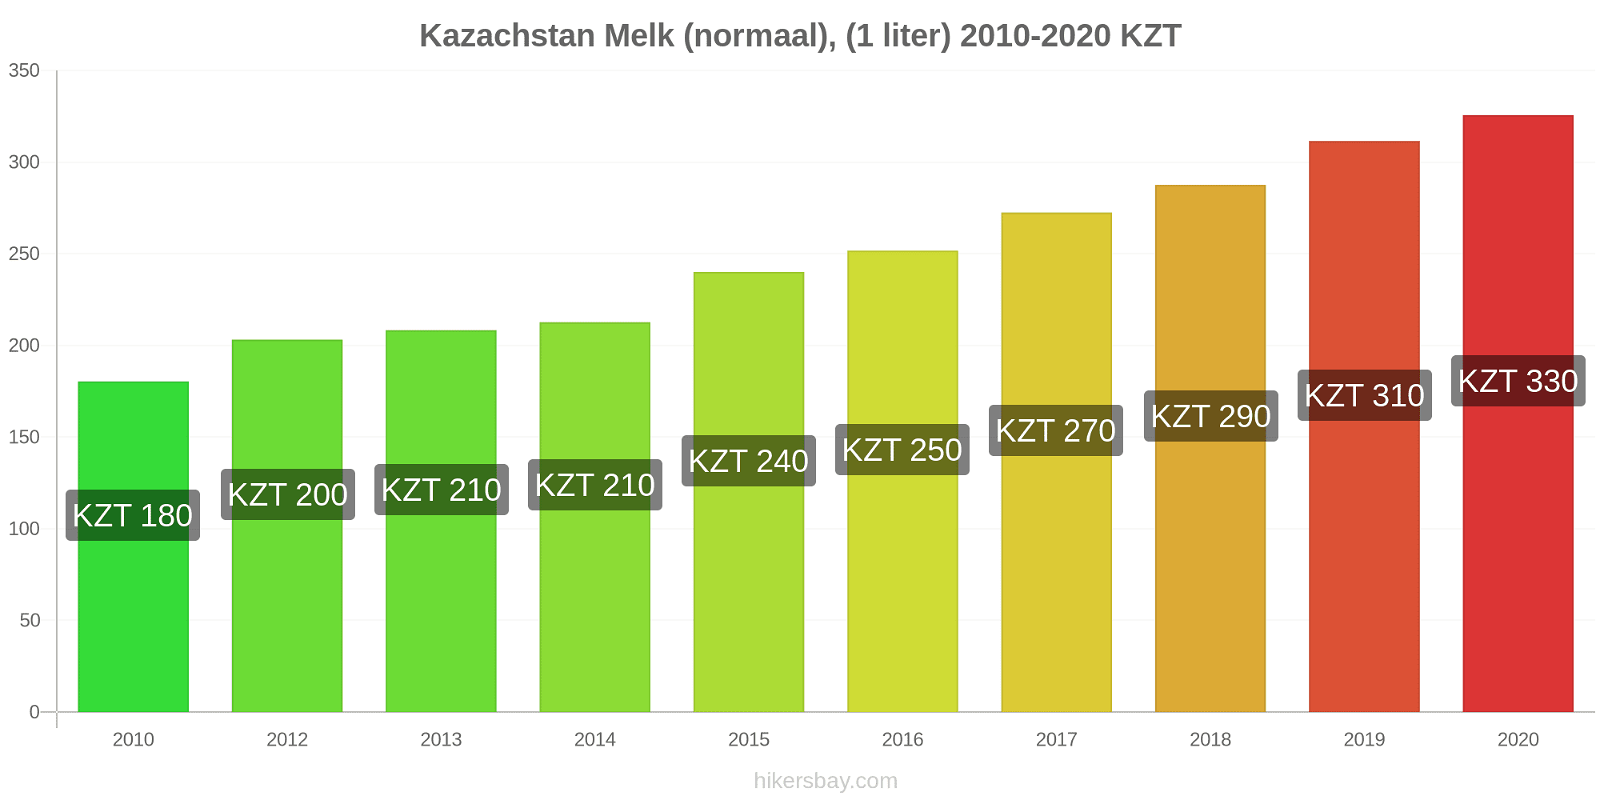 Kazachstan prijswijzigingen Melk (regelmatige), (1 liter) hikersbay.com